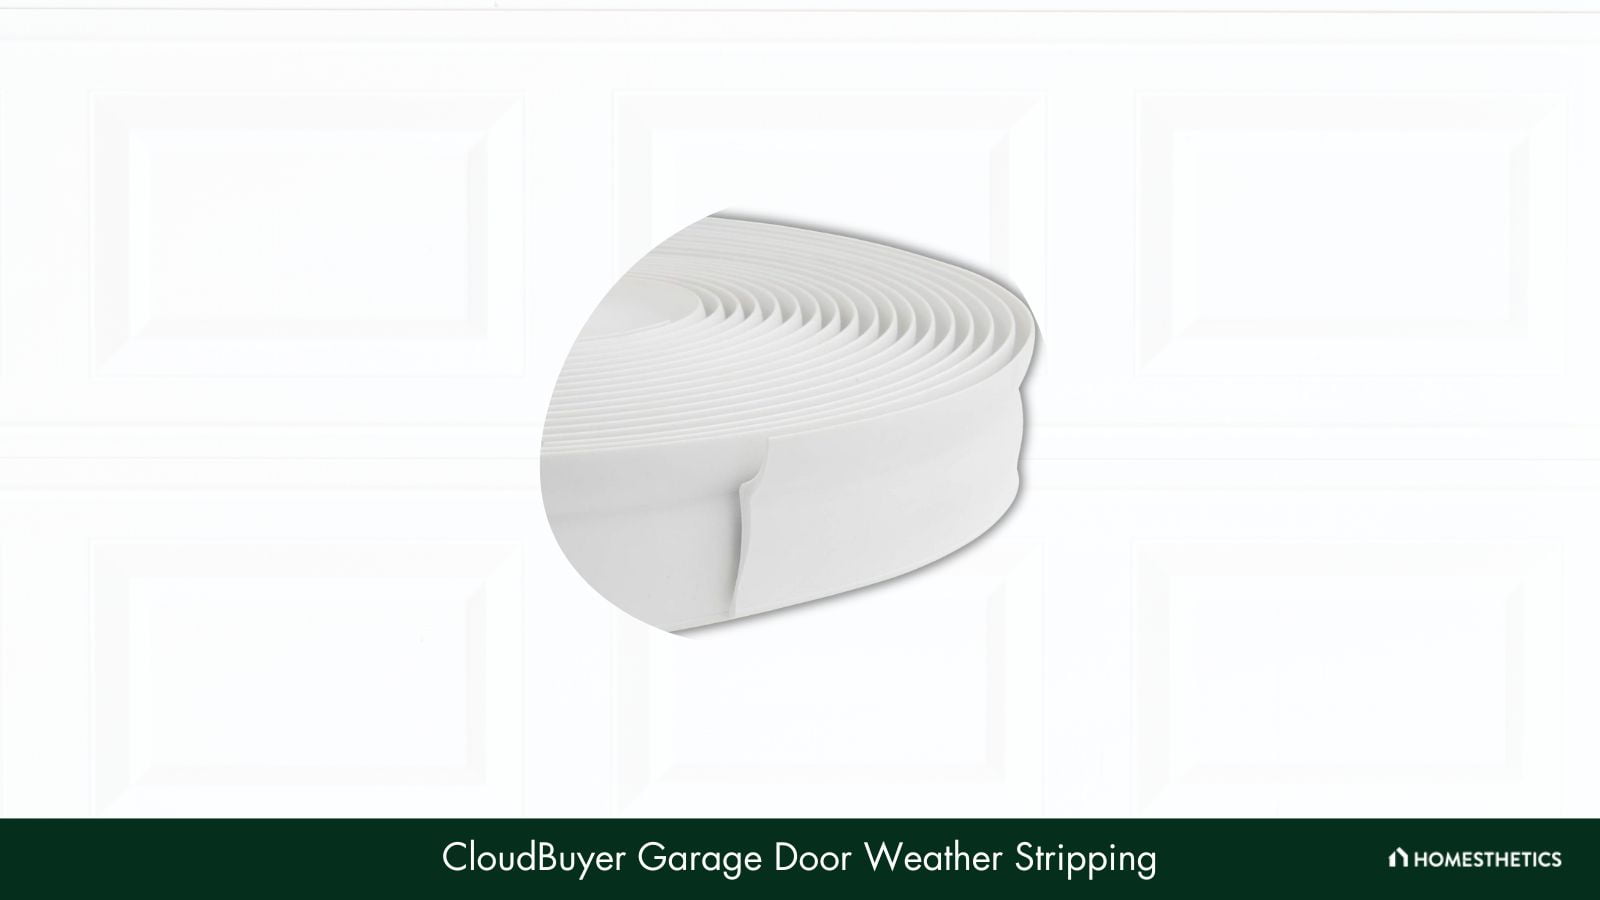 CloudBuyer Garage Door Weather Stripping